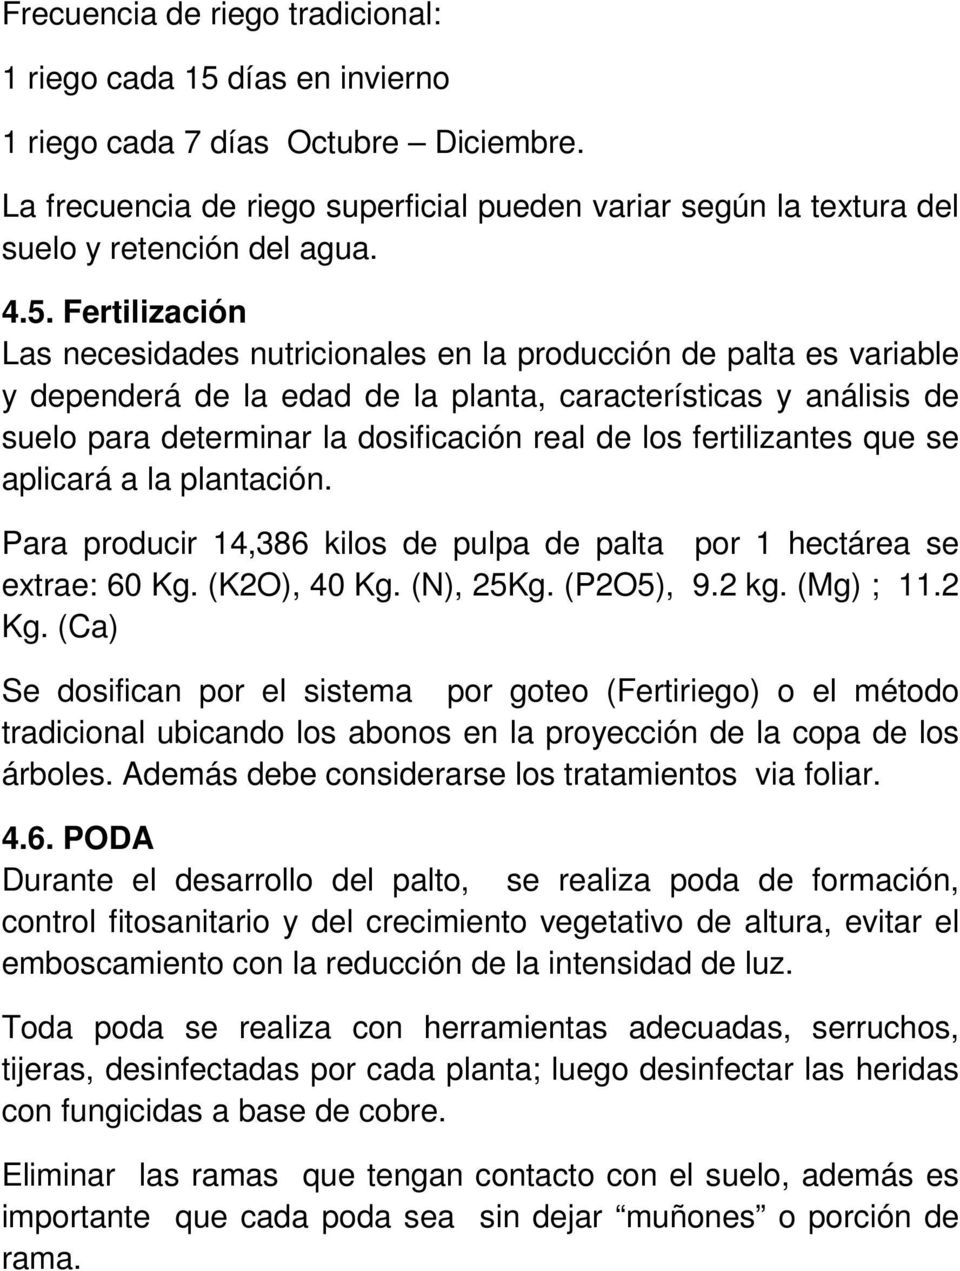 Fertilización Las necesidades nutricionales en la producción de palta es variable y dependerá de la edad de la planta, características y análisis de suelo para determinar la dosificación real de los